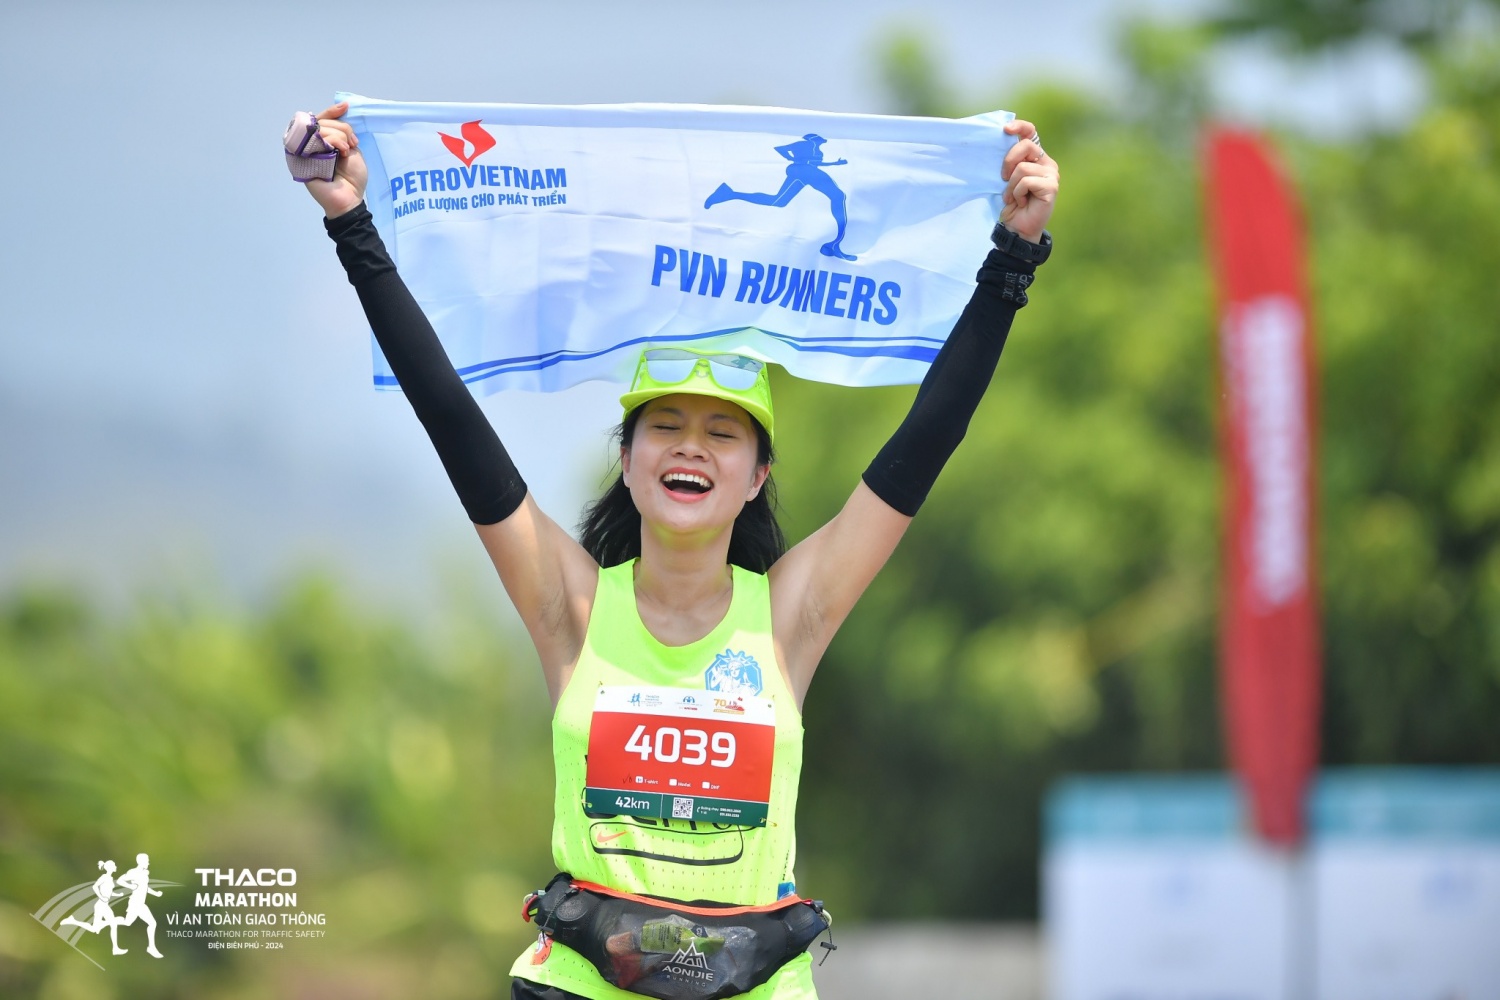 Petrovietnam đồng hành cùng giải chạy THACO Marathon Vì an toàn giao thông   Điện Biên Phủ 2024